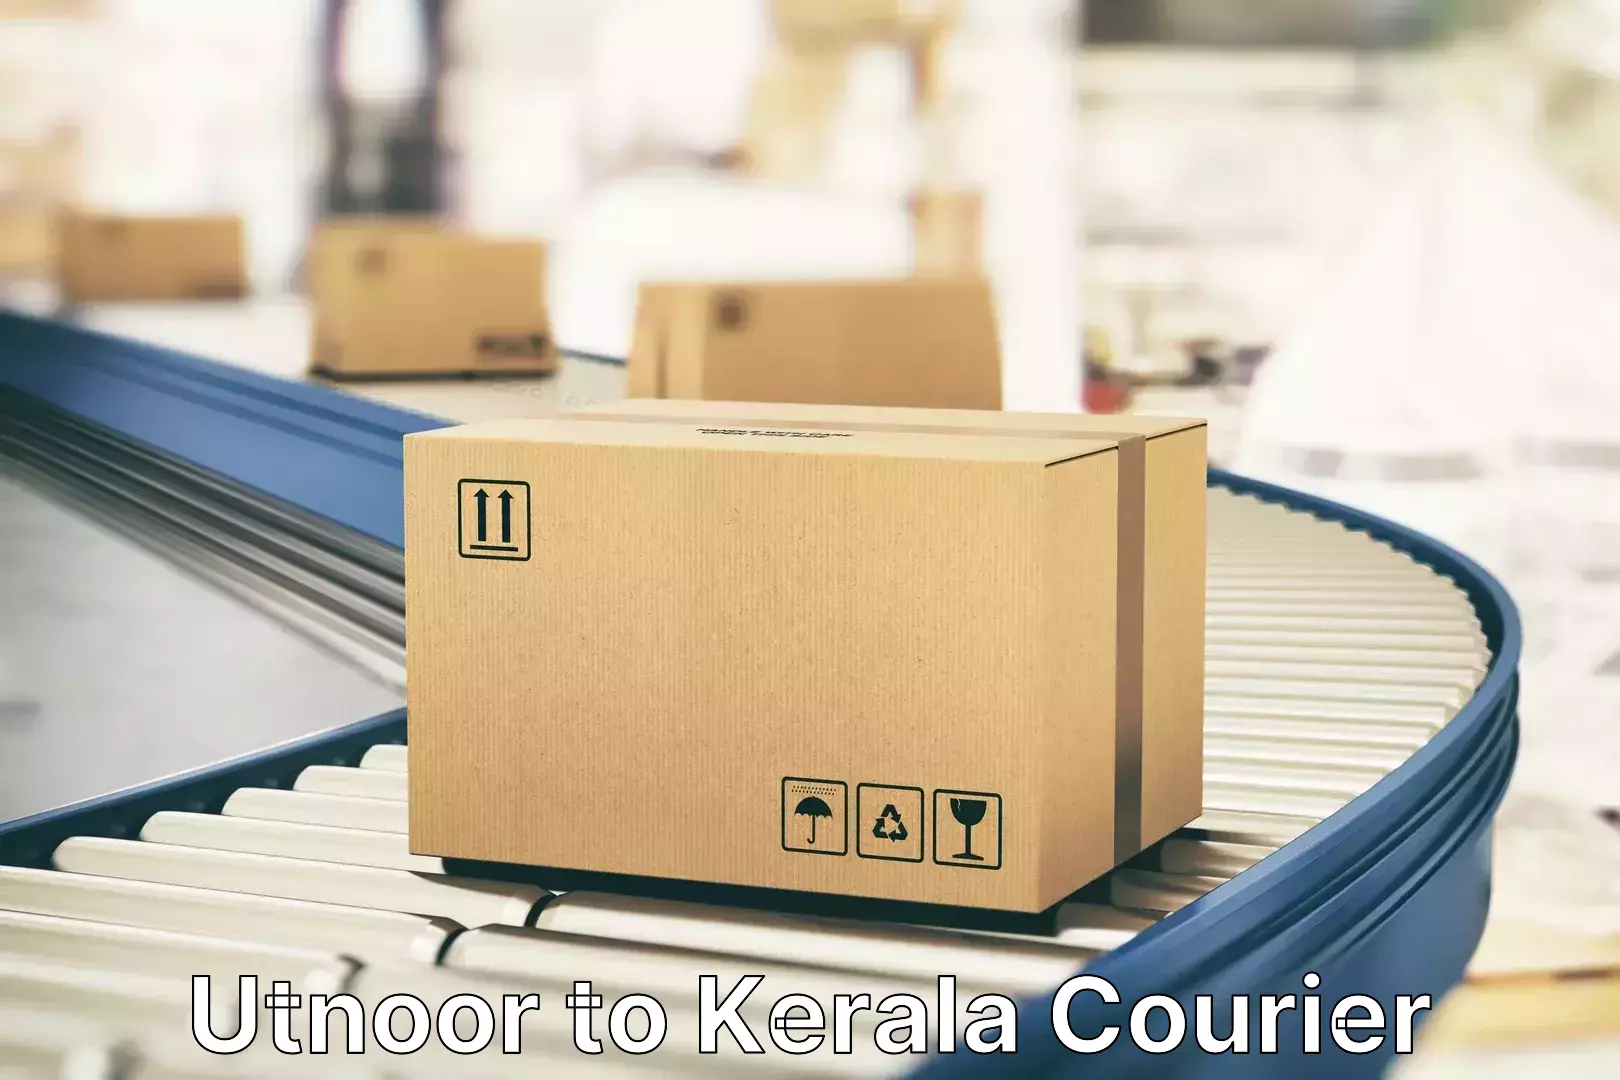 Electronic items luggage shipping Utnoor to Kerala